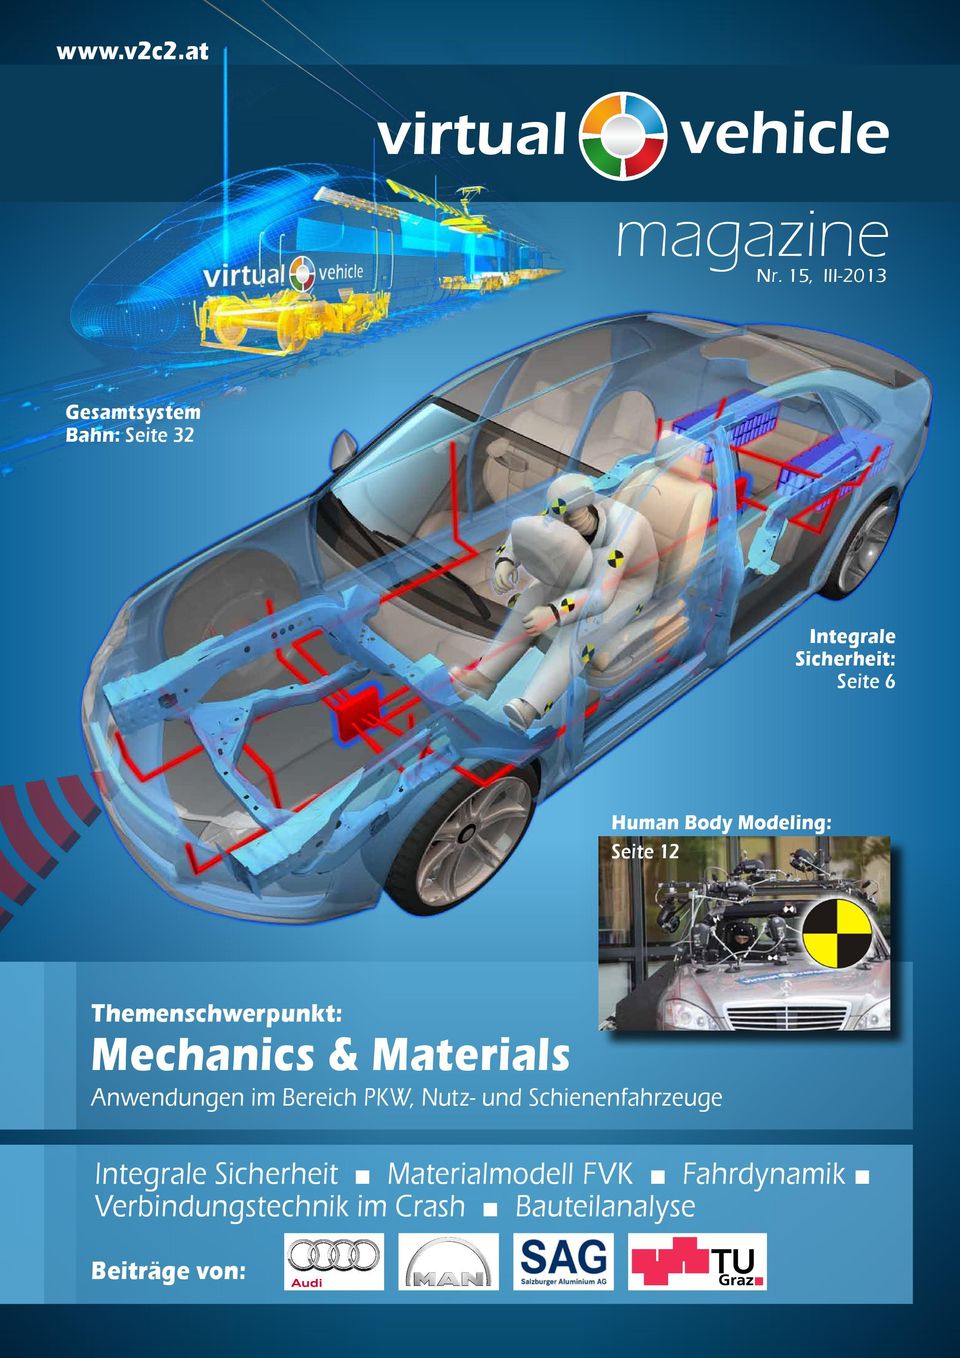 Modeling: Seite 12 Themenschwerpunkt: Mechanics & Materials Anwendungen im Bereich